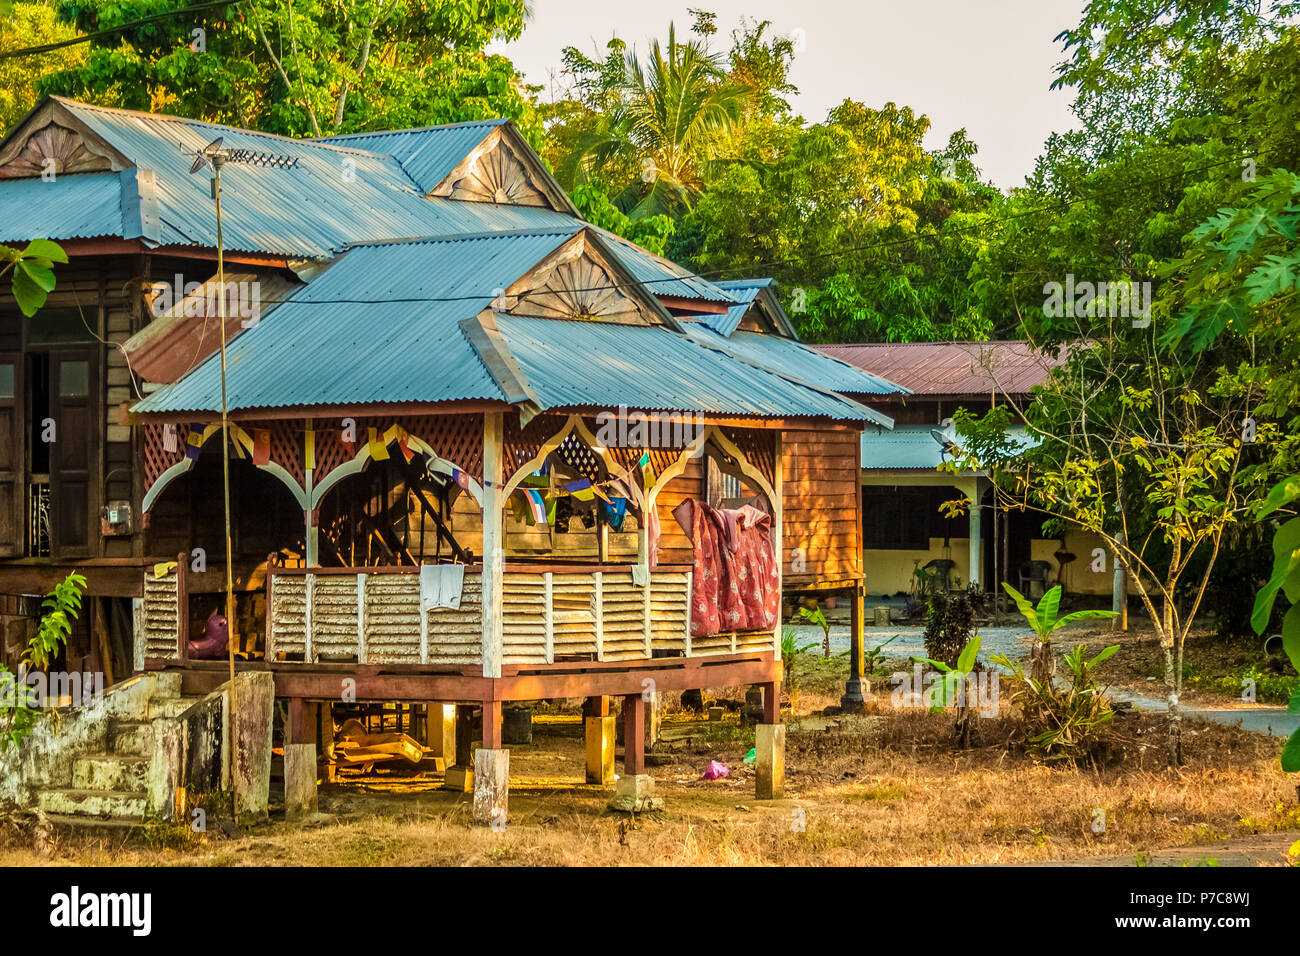 Un malais traditionnel en bois maison sur pilotis avec une toiture adaptée au décor tropical, le séchage des vêtements sur une corde à linge ; accueil des résidents locaux sur l'île de Langkawi... Banque D'Images